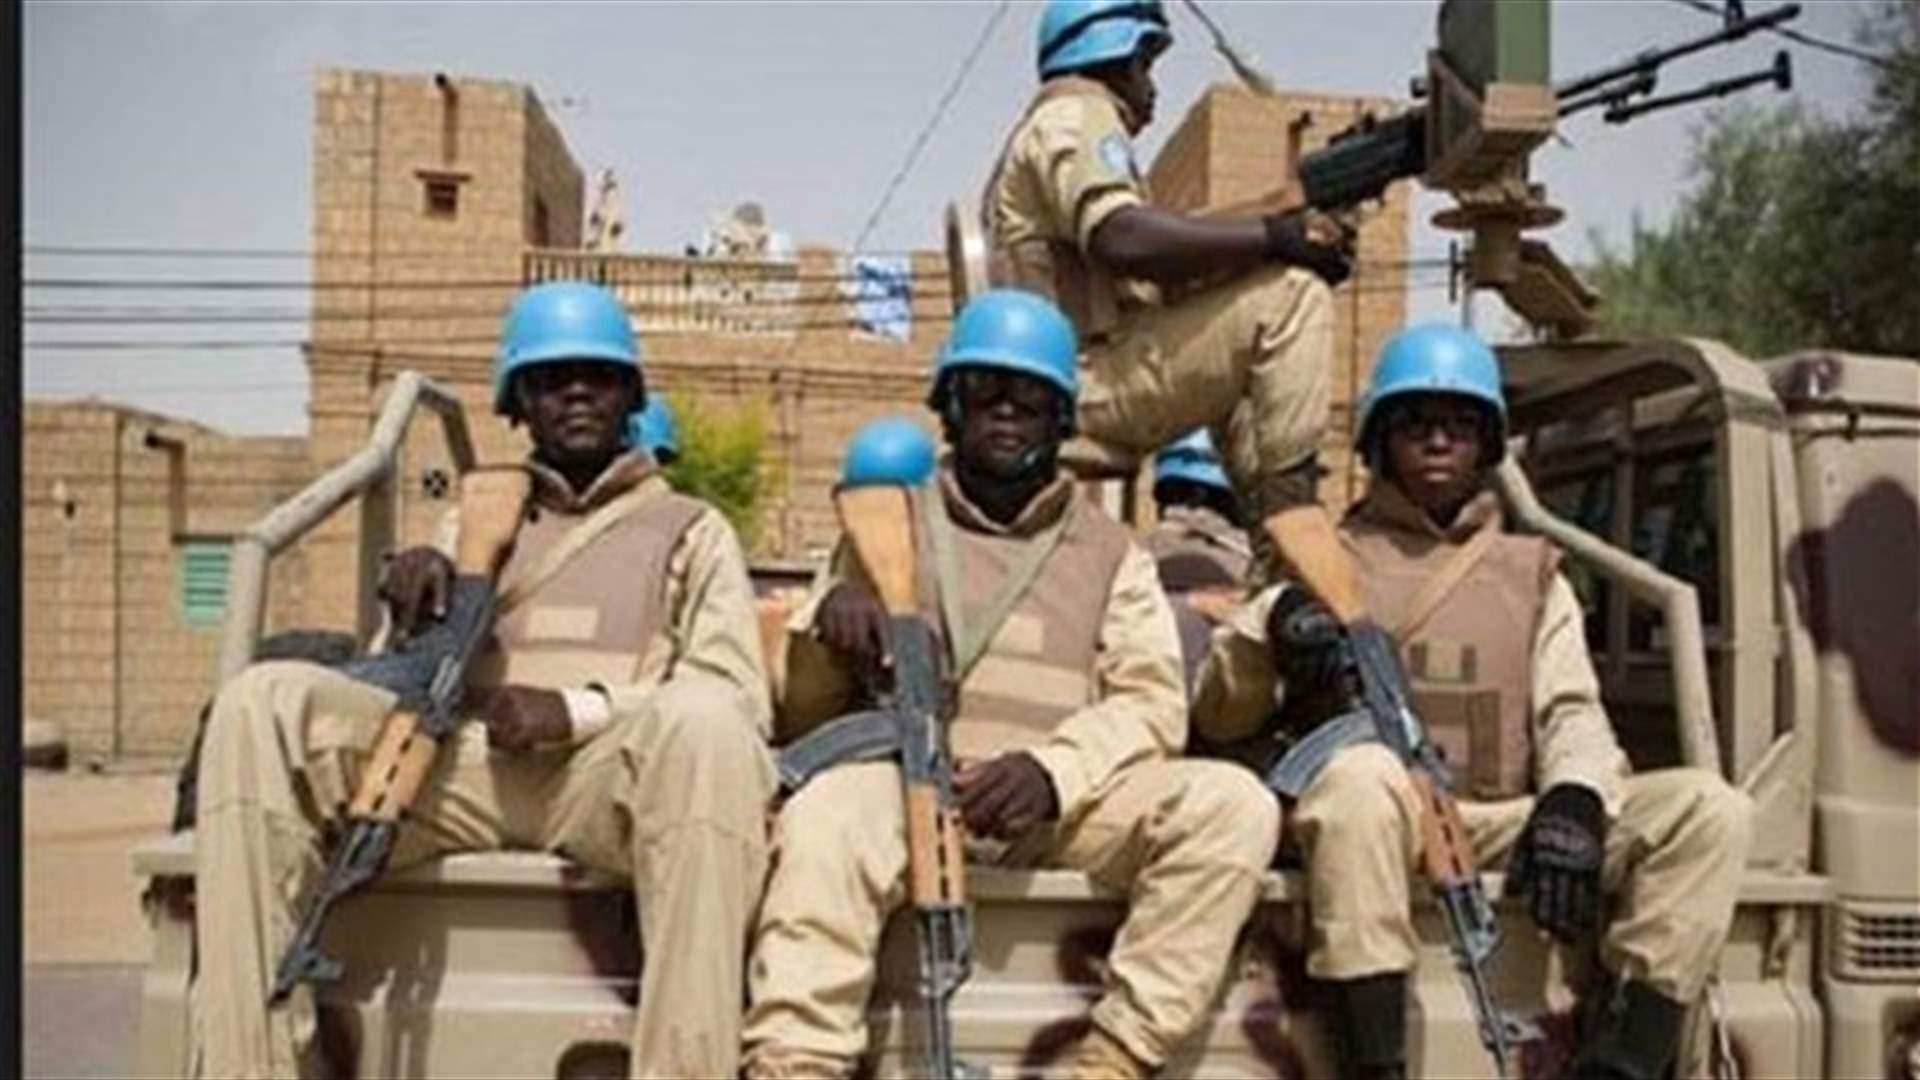 مقتل جنديين ماليين في كمين قرب الحدود الموريتانية